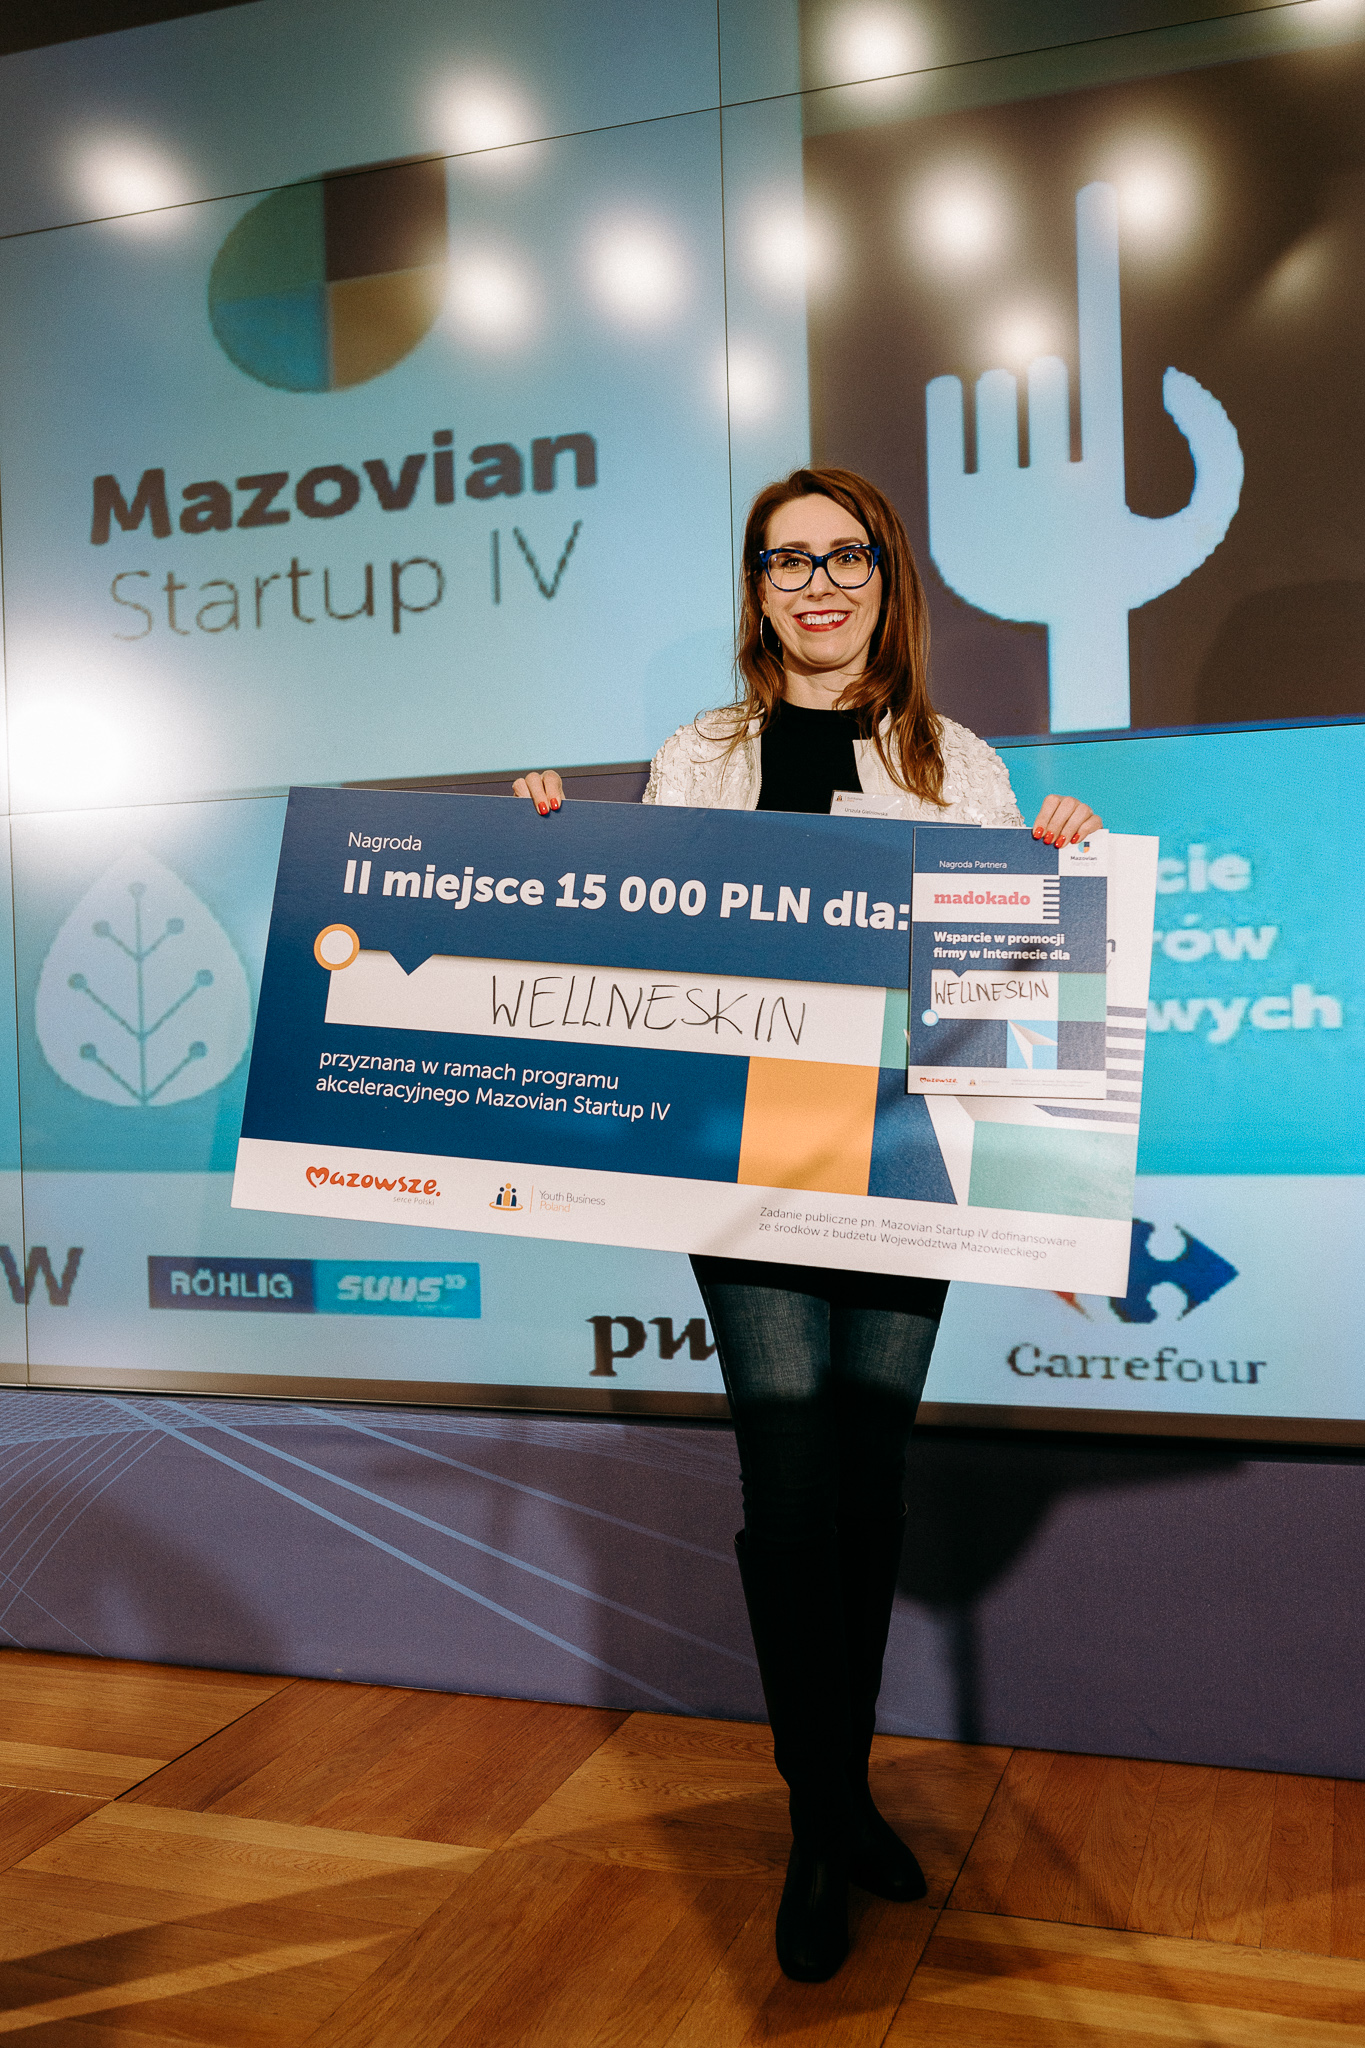 Młoda usmiechnięta kobieta, trzymająca przed sobą symboliczny czek na 15 000 zł. W tle prezentacja i logo Mazovian Startup IV.